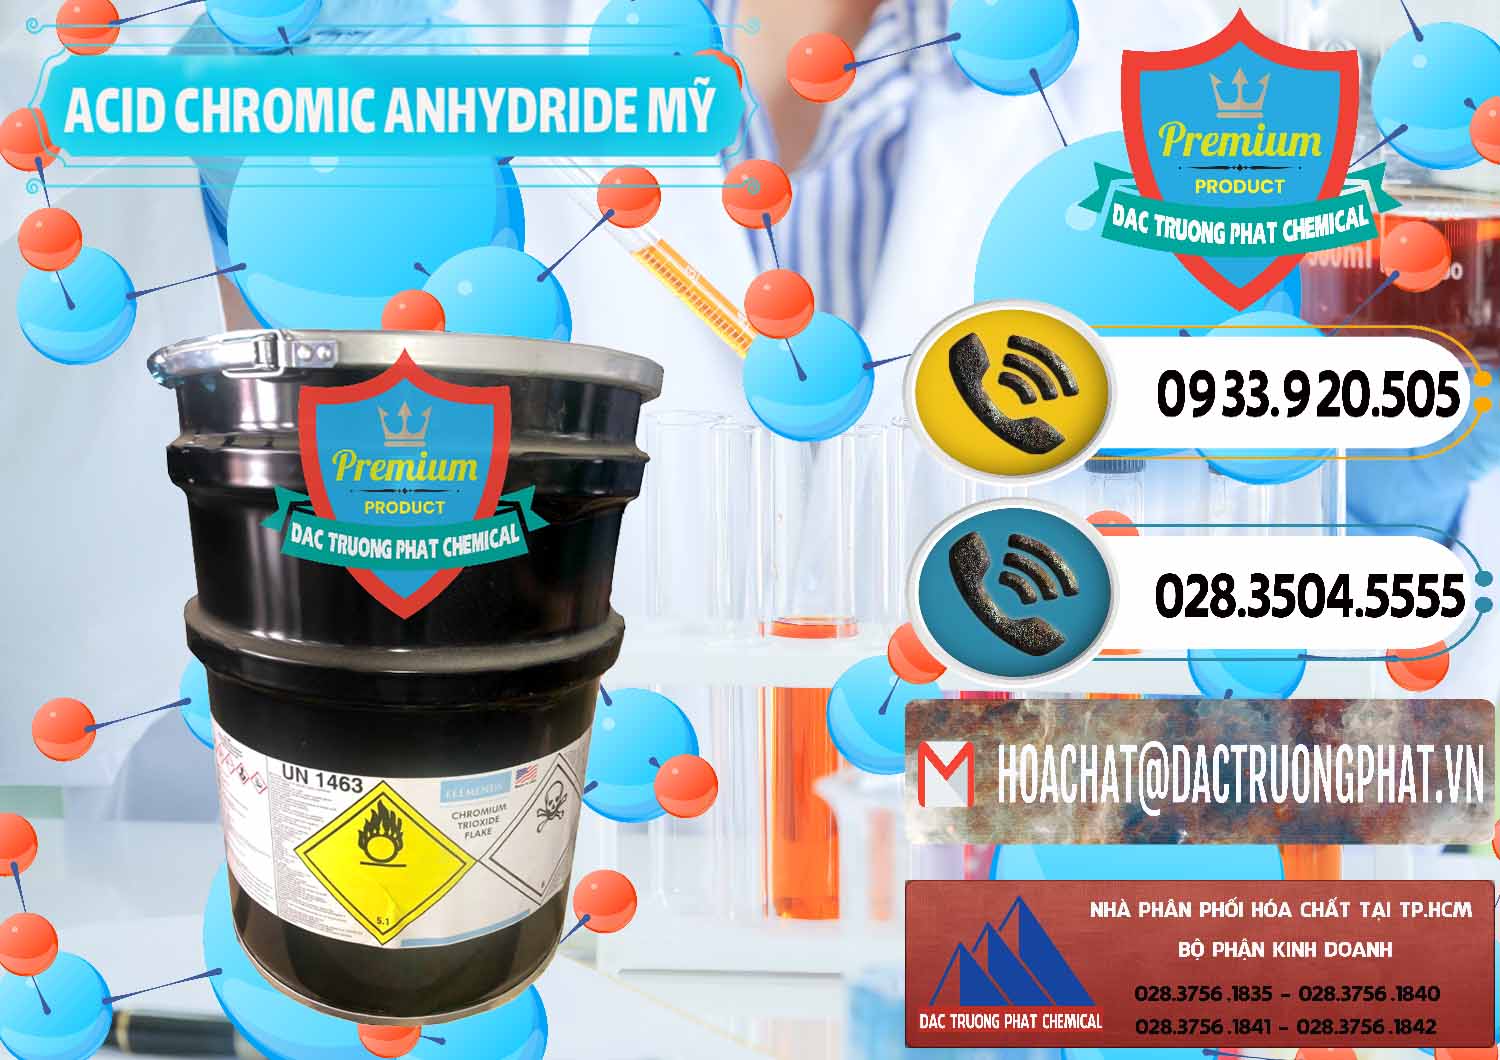 Cty chuyên nhập khẩu ( bán ) Acid Chromic Anhydride - Cromic CRO3 USA Mỹ - 0364 - Cty phân phối - cung cấp hóa chất tại TP.HCM - hoachatdetnhuom.vn